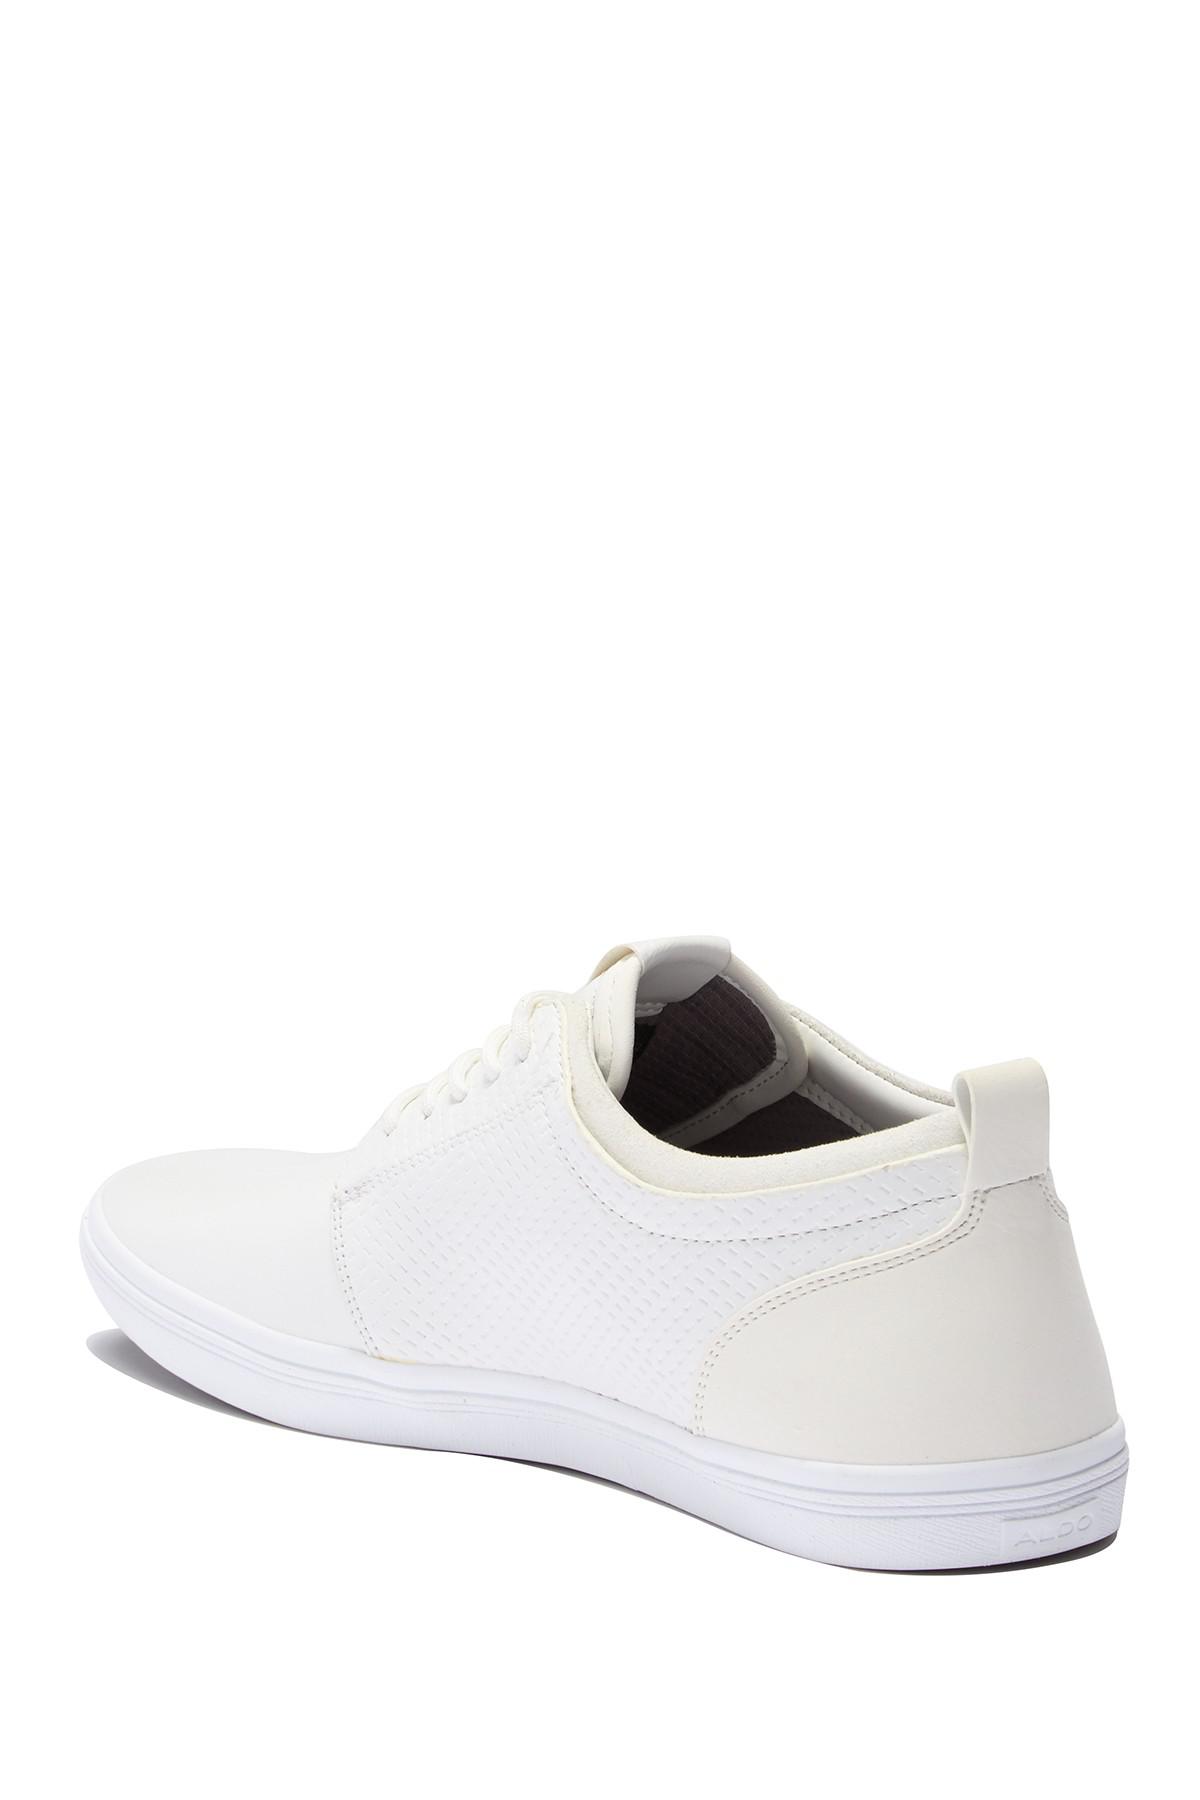 ALDO Seideman Sneaker in White for Men 